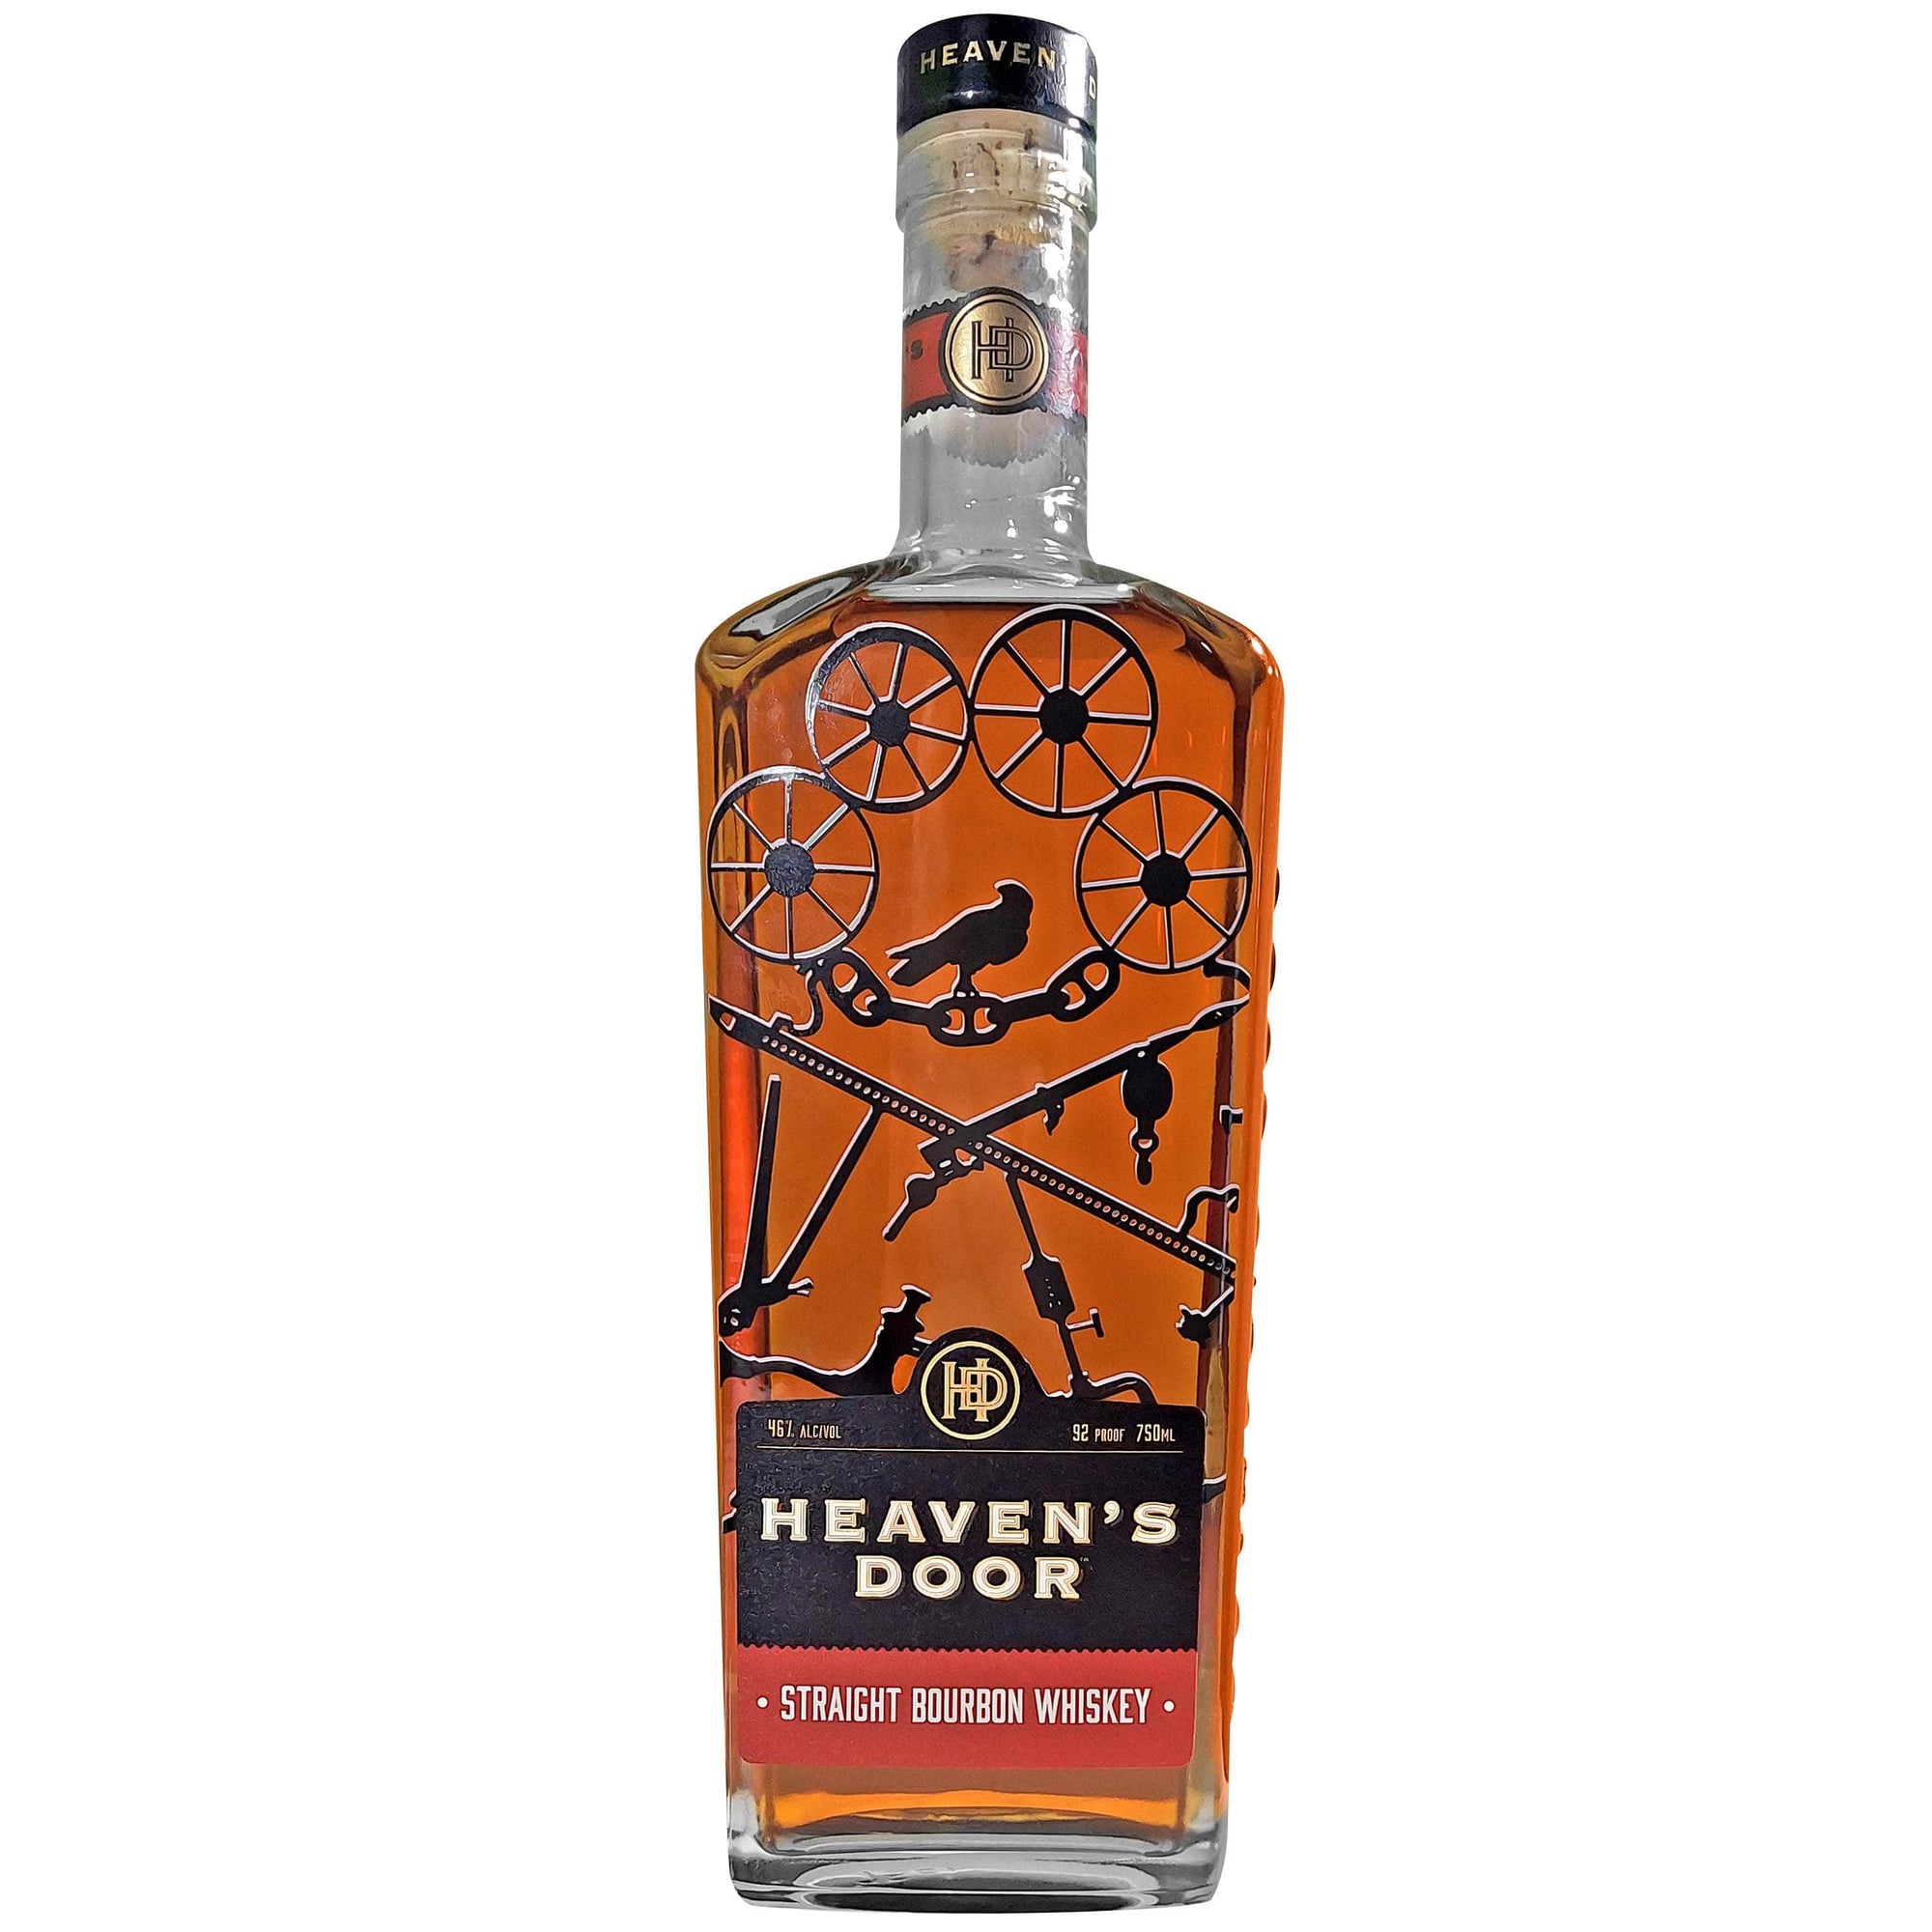 Heavens Door Whiskey Gift Set, Heavens Door Bourbon